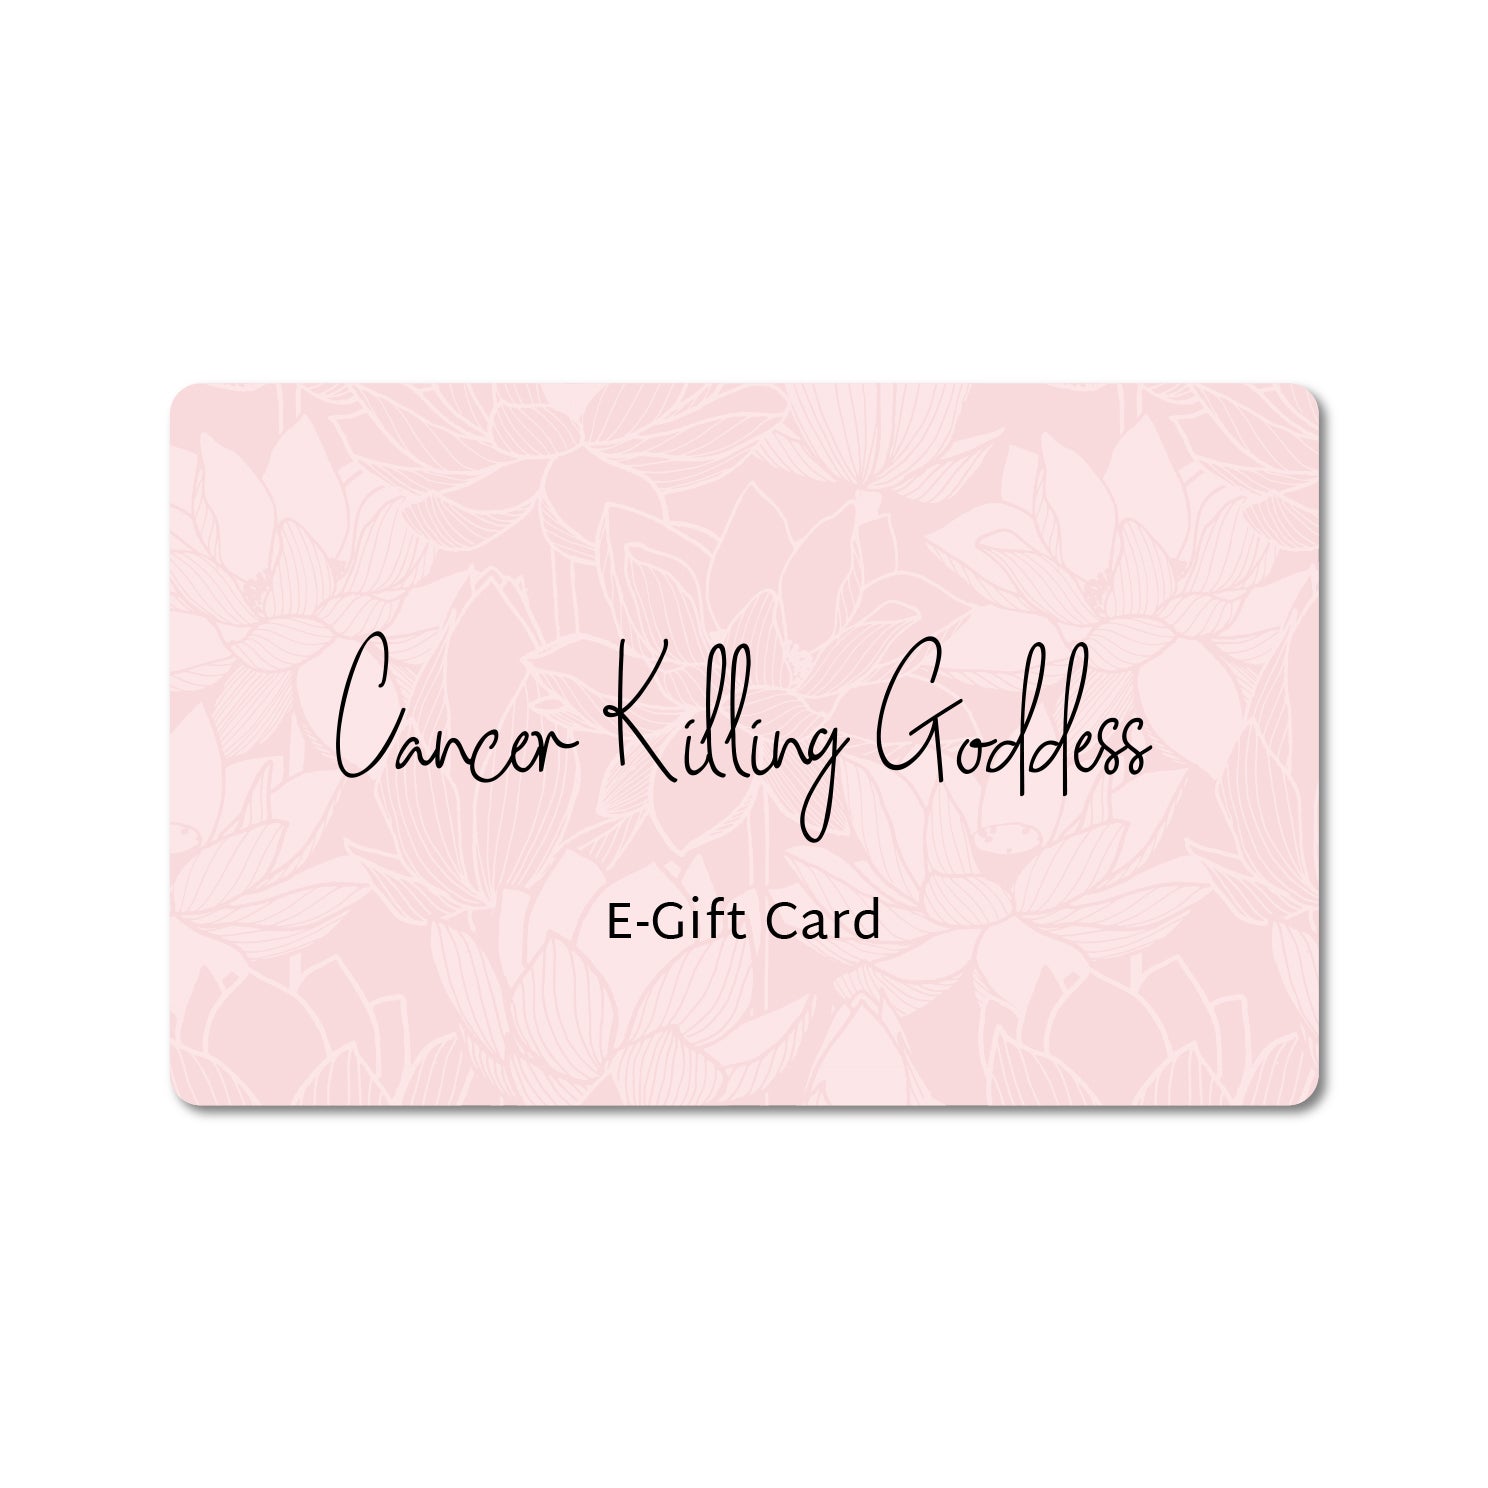 Cancer Killing Goddess Gift Card